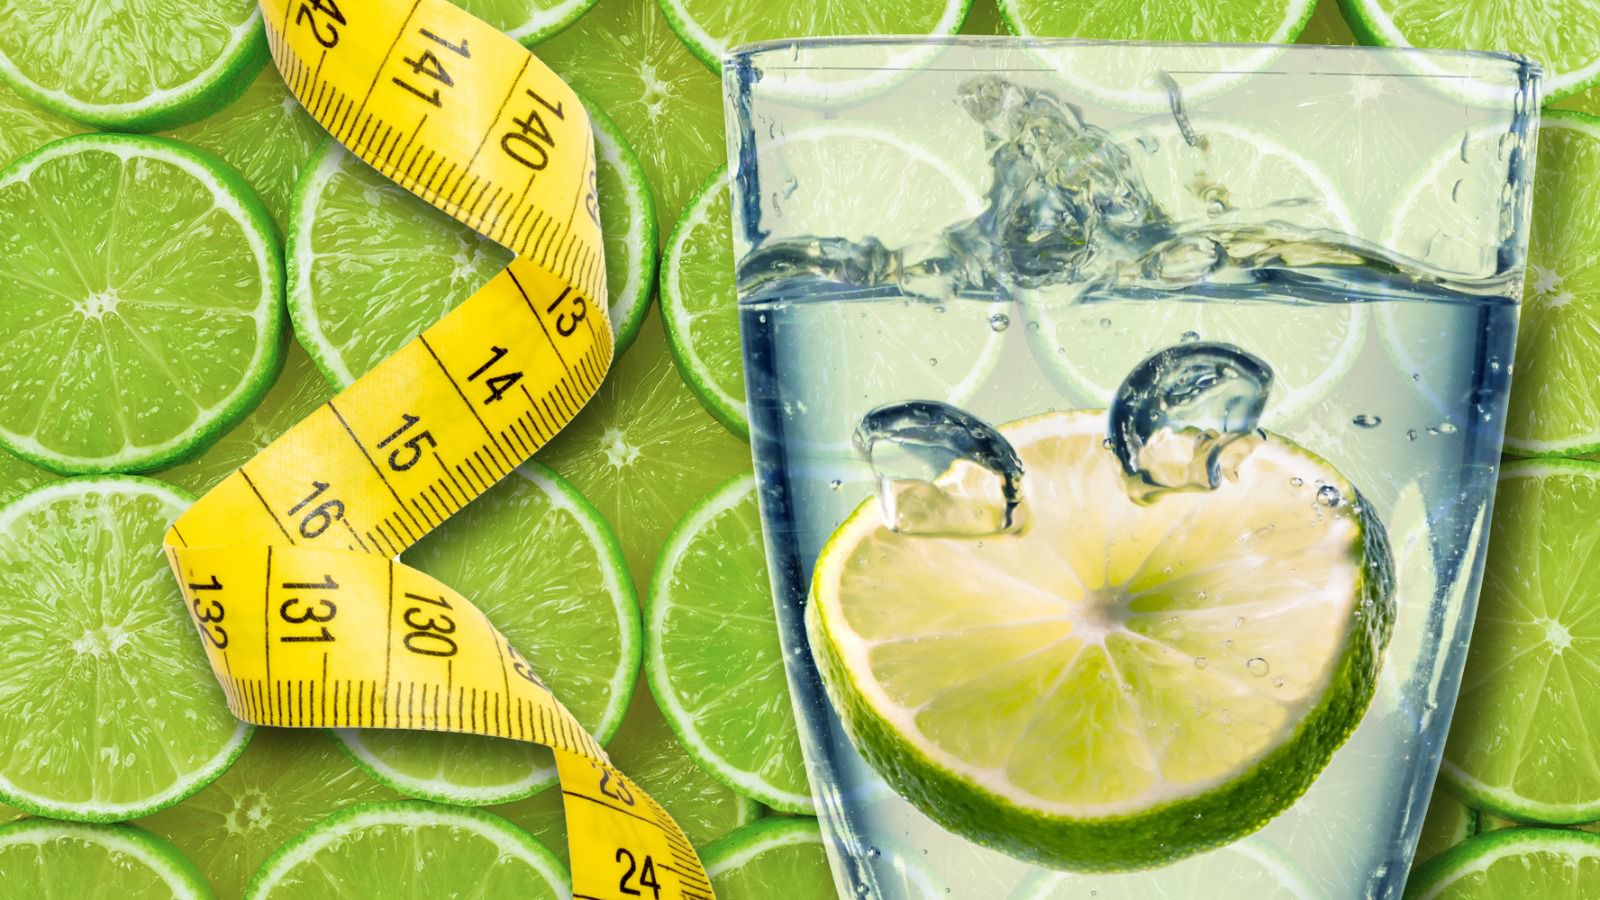 El agua con limón es un remedio popular para bajar de peso. (Fotoarte: Andrea López Trejo | El Financiero).